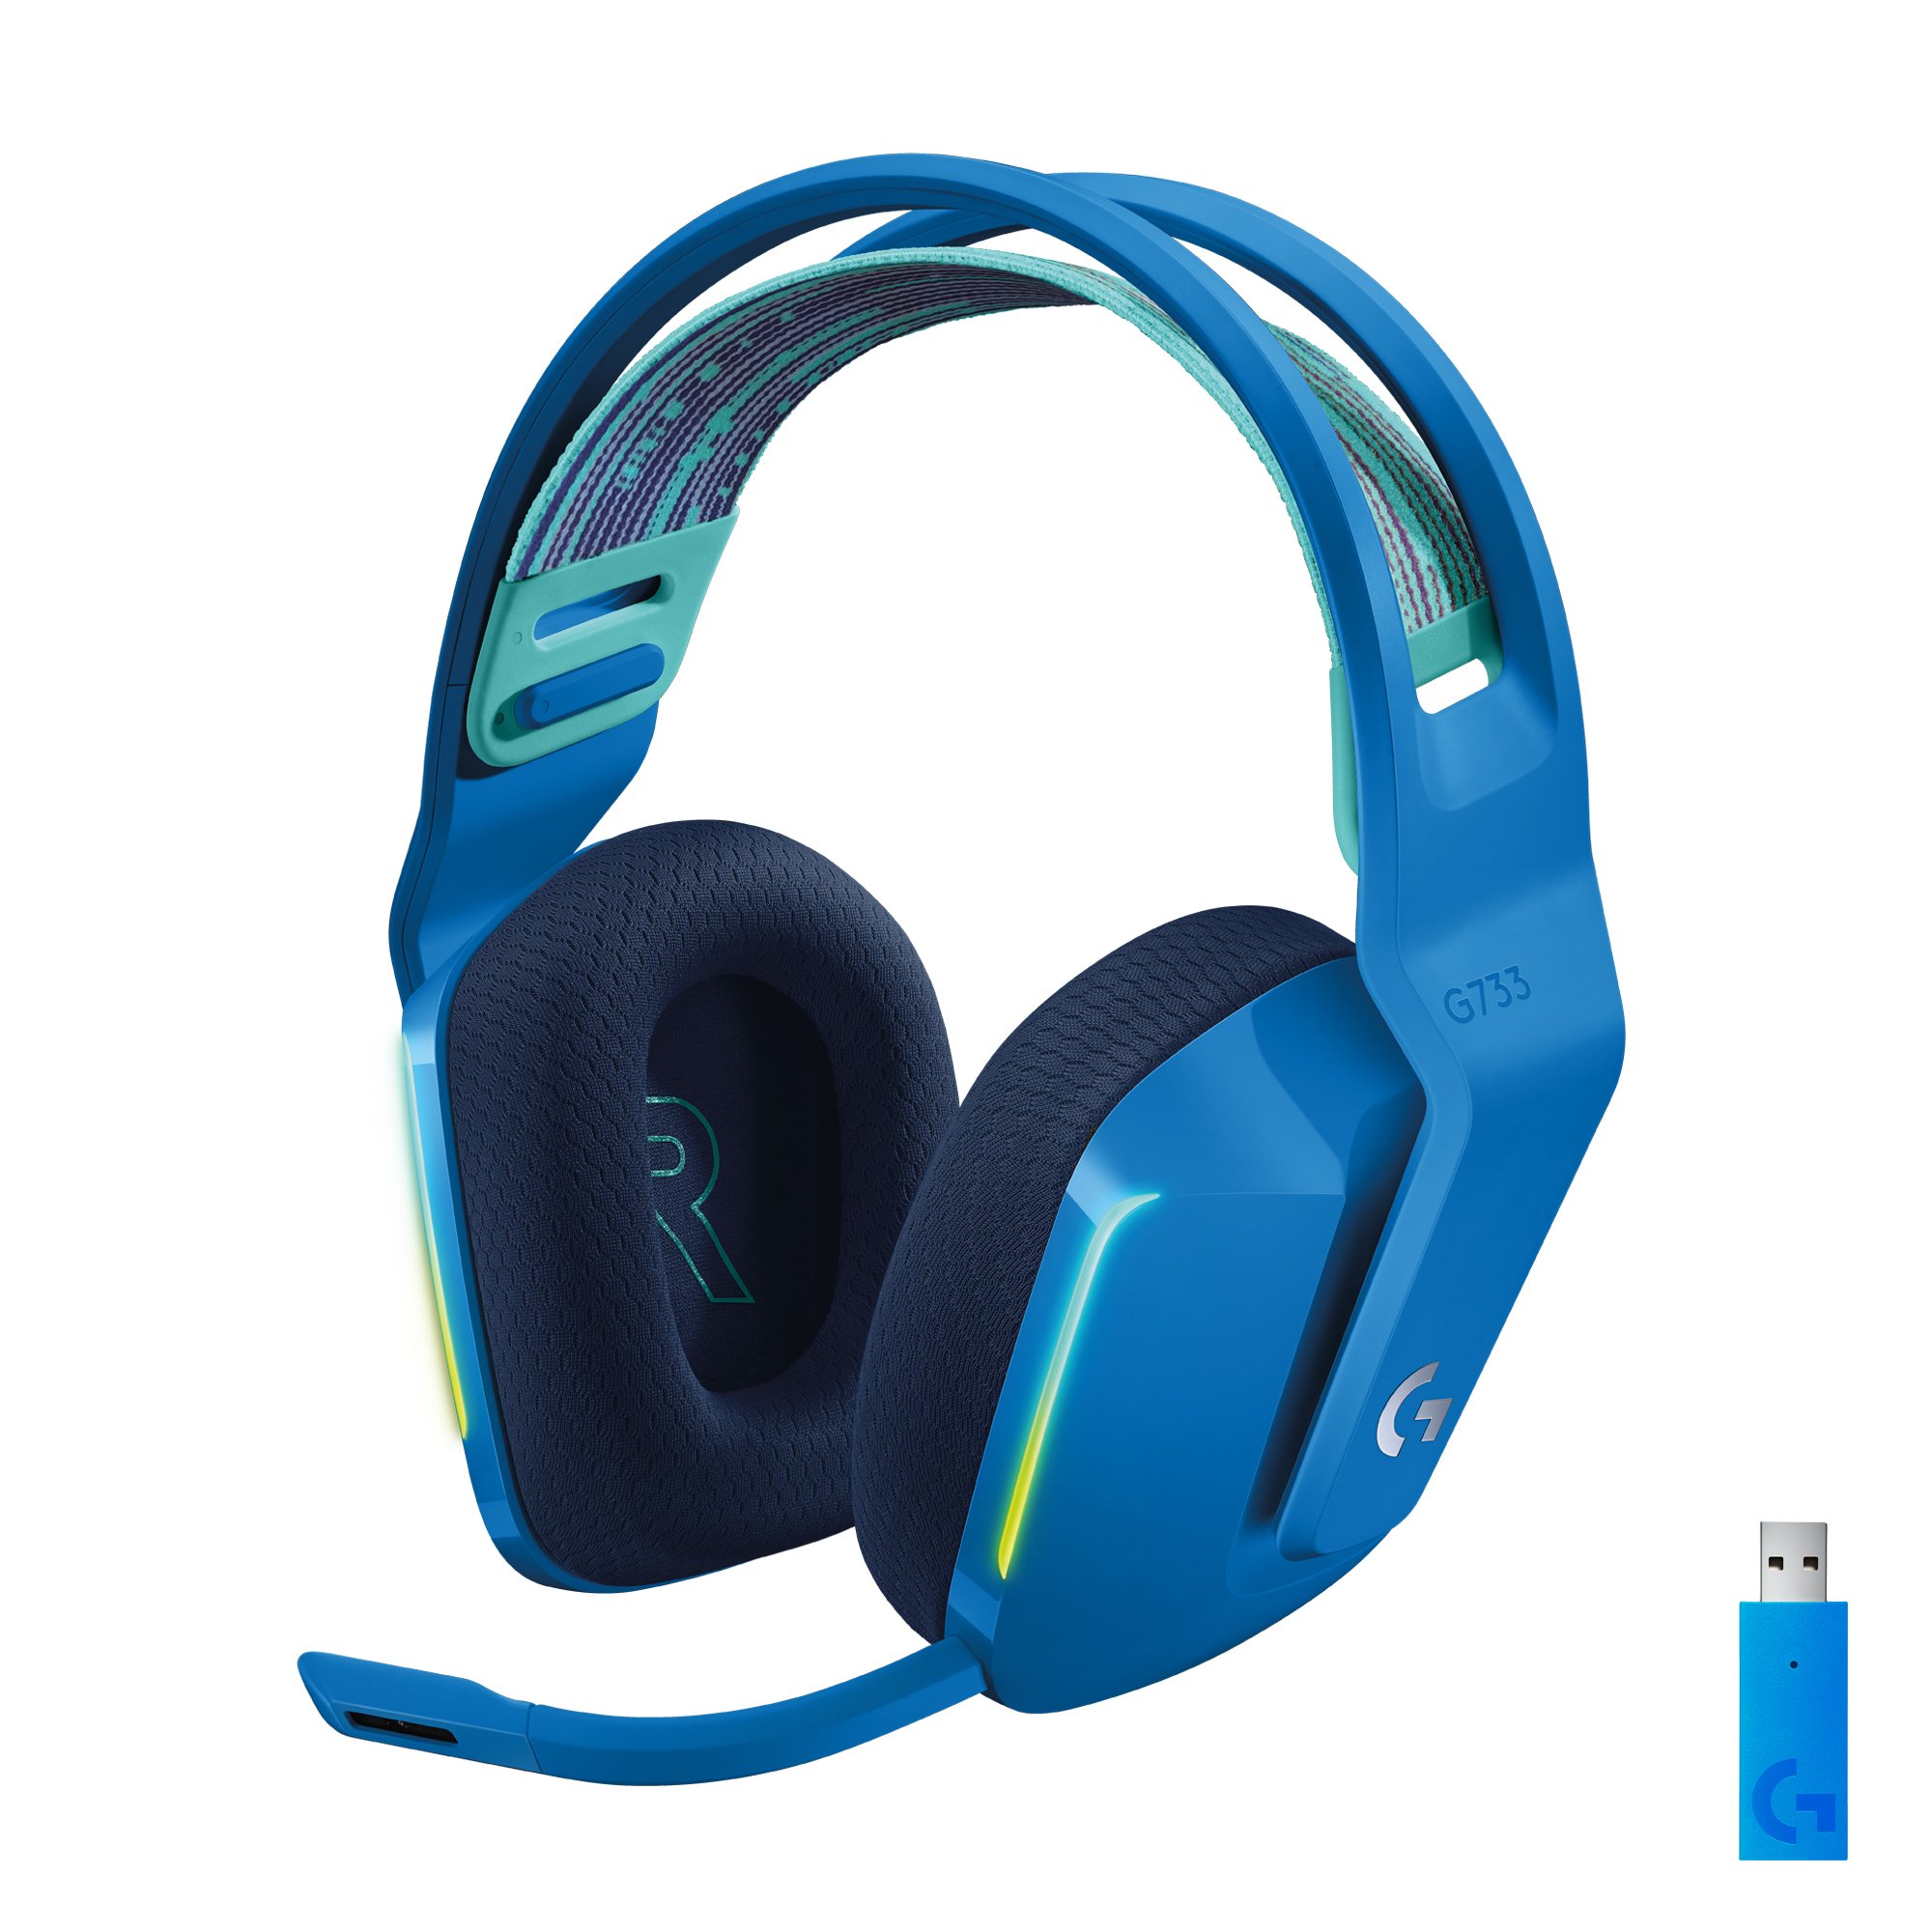 Logitech Headset ZG733BL / 981-000943 Blue